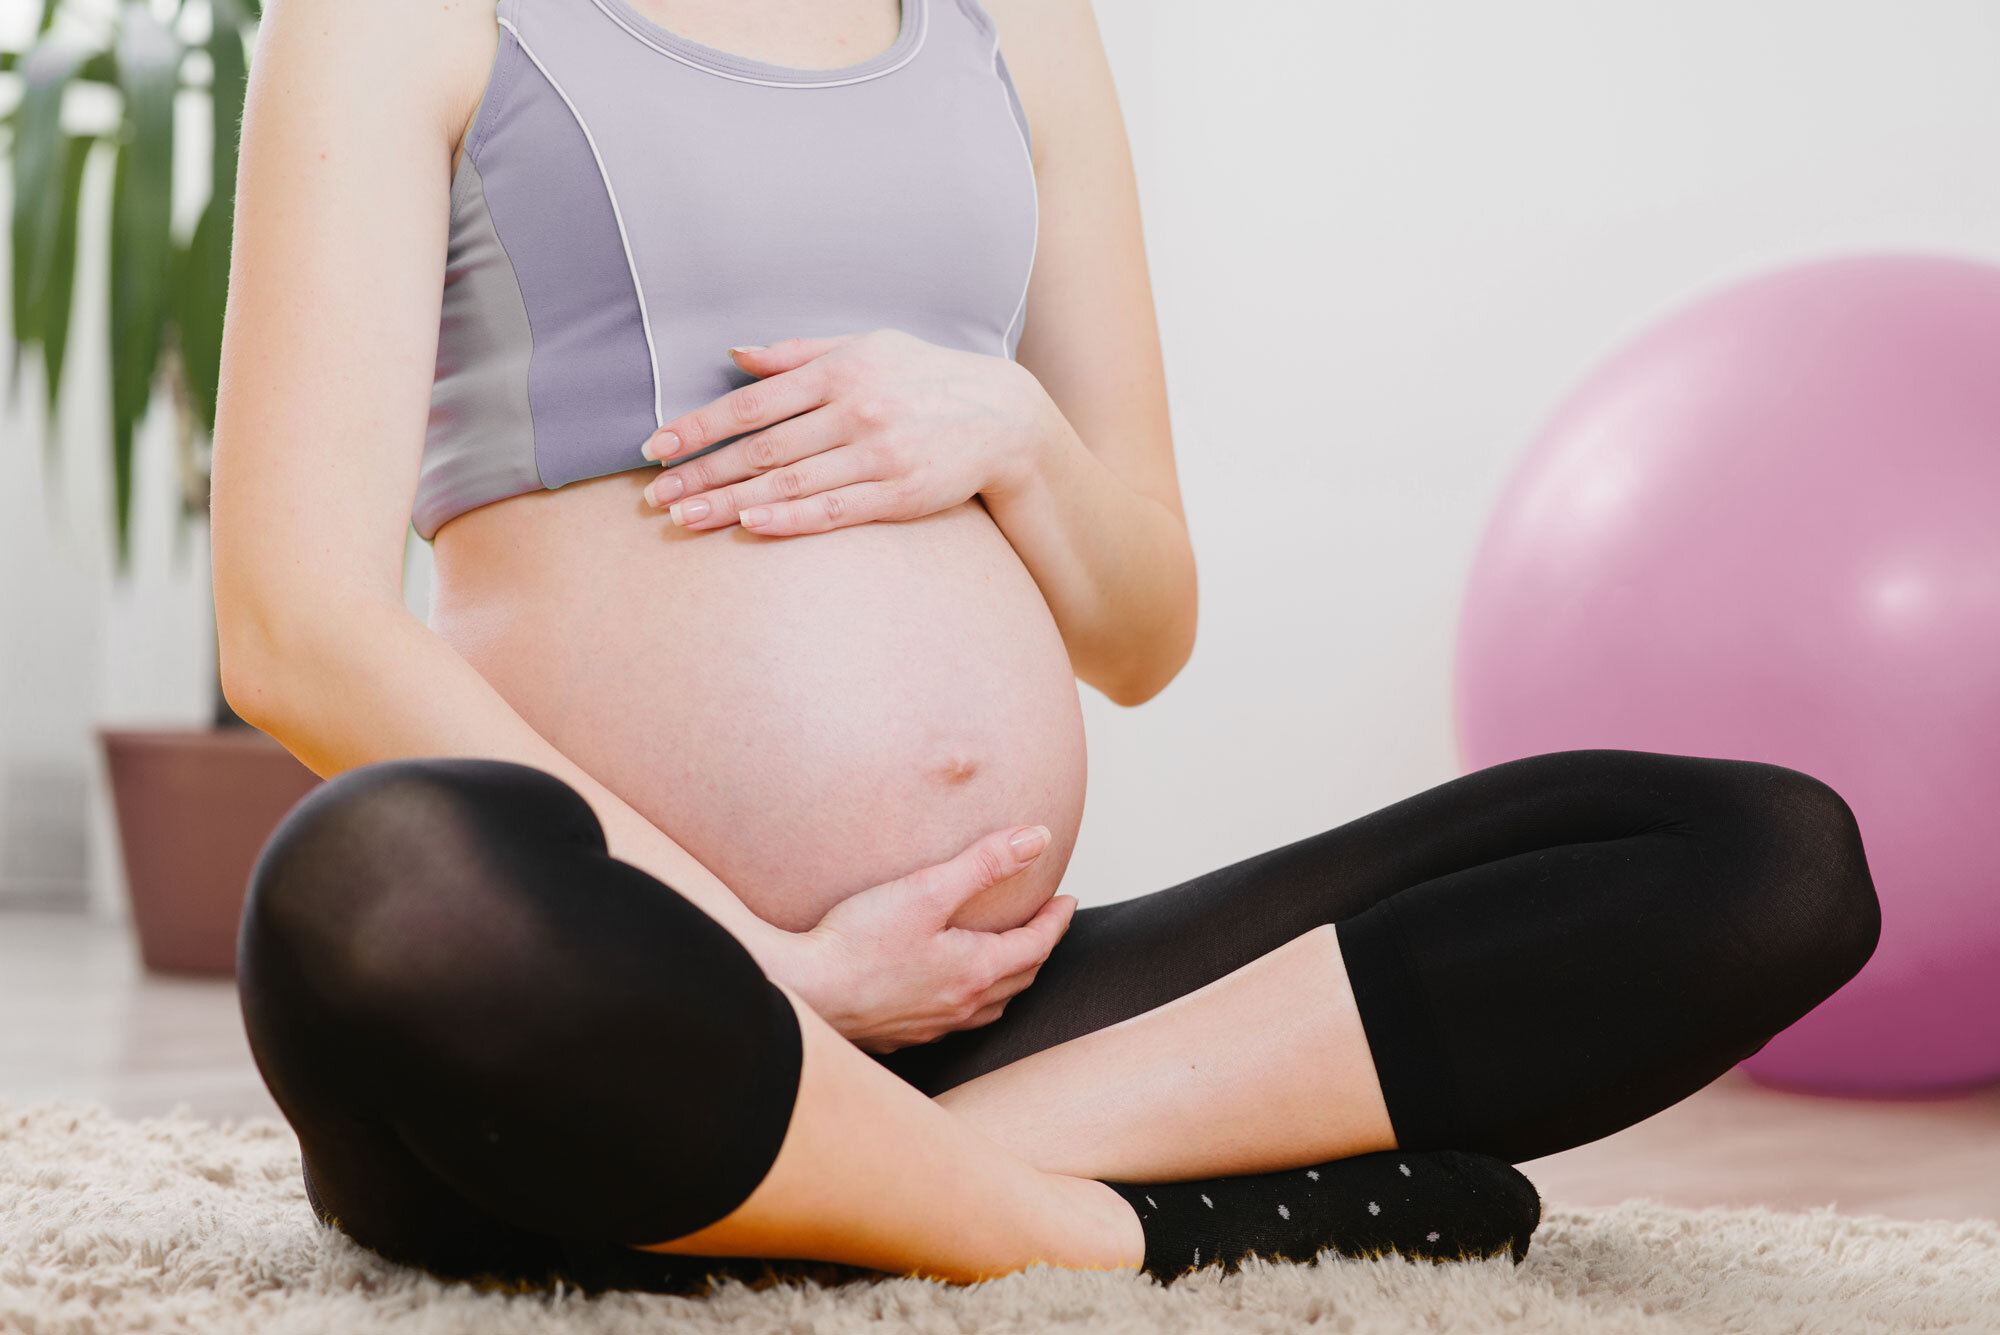 Schwangere Frau sitzt auf einem Teppich und hält ihren Bauch